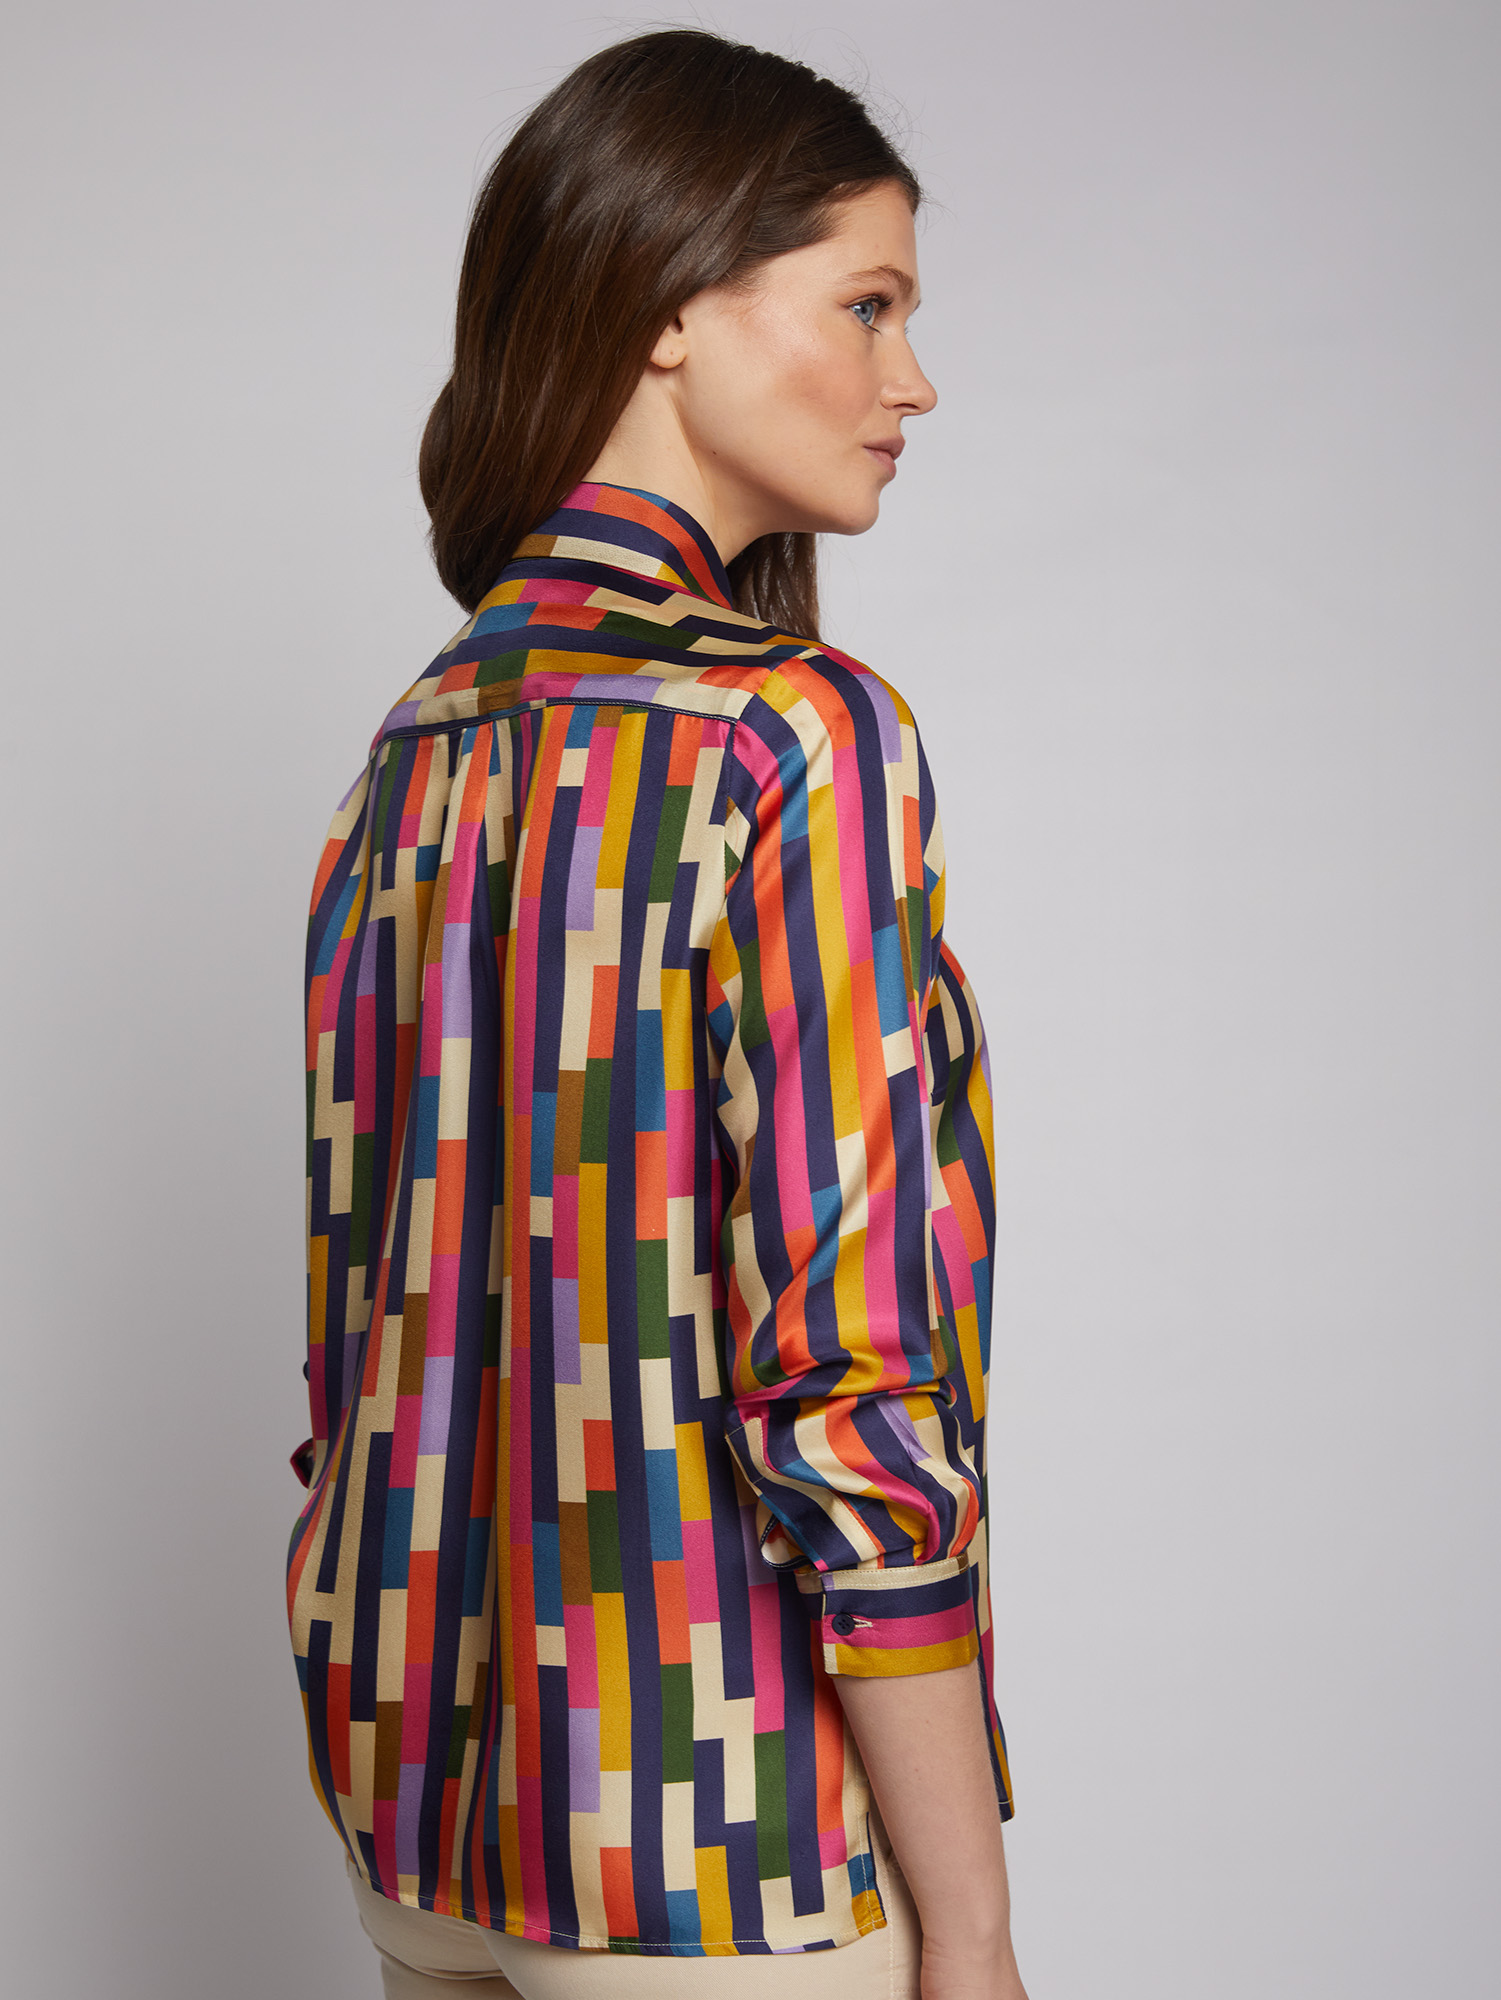 VILAGALLO Silk Shirt - Aneva Boutique